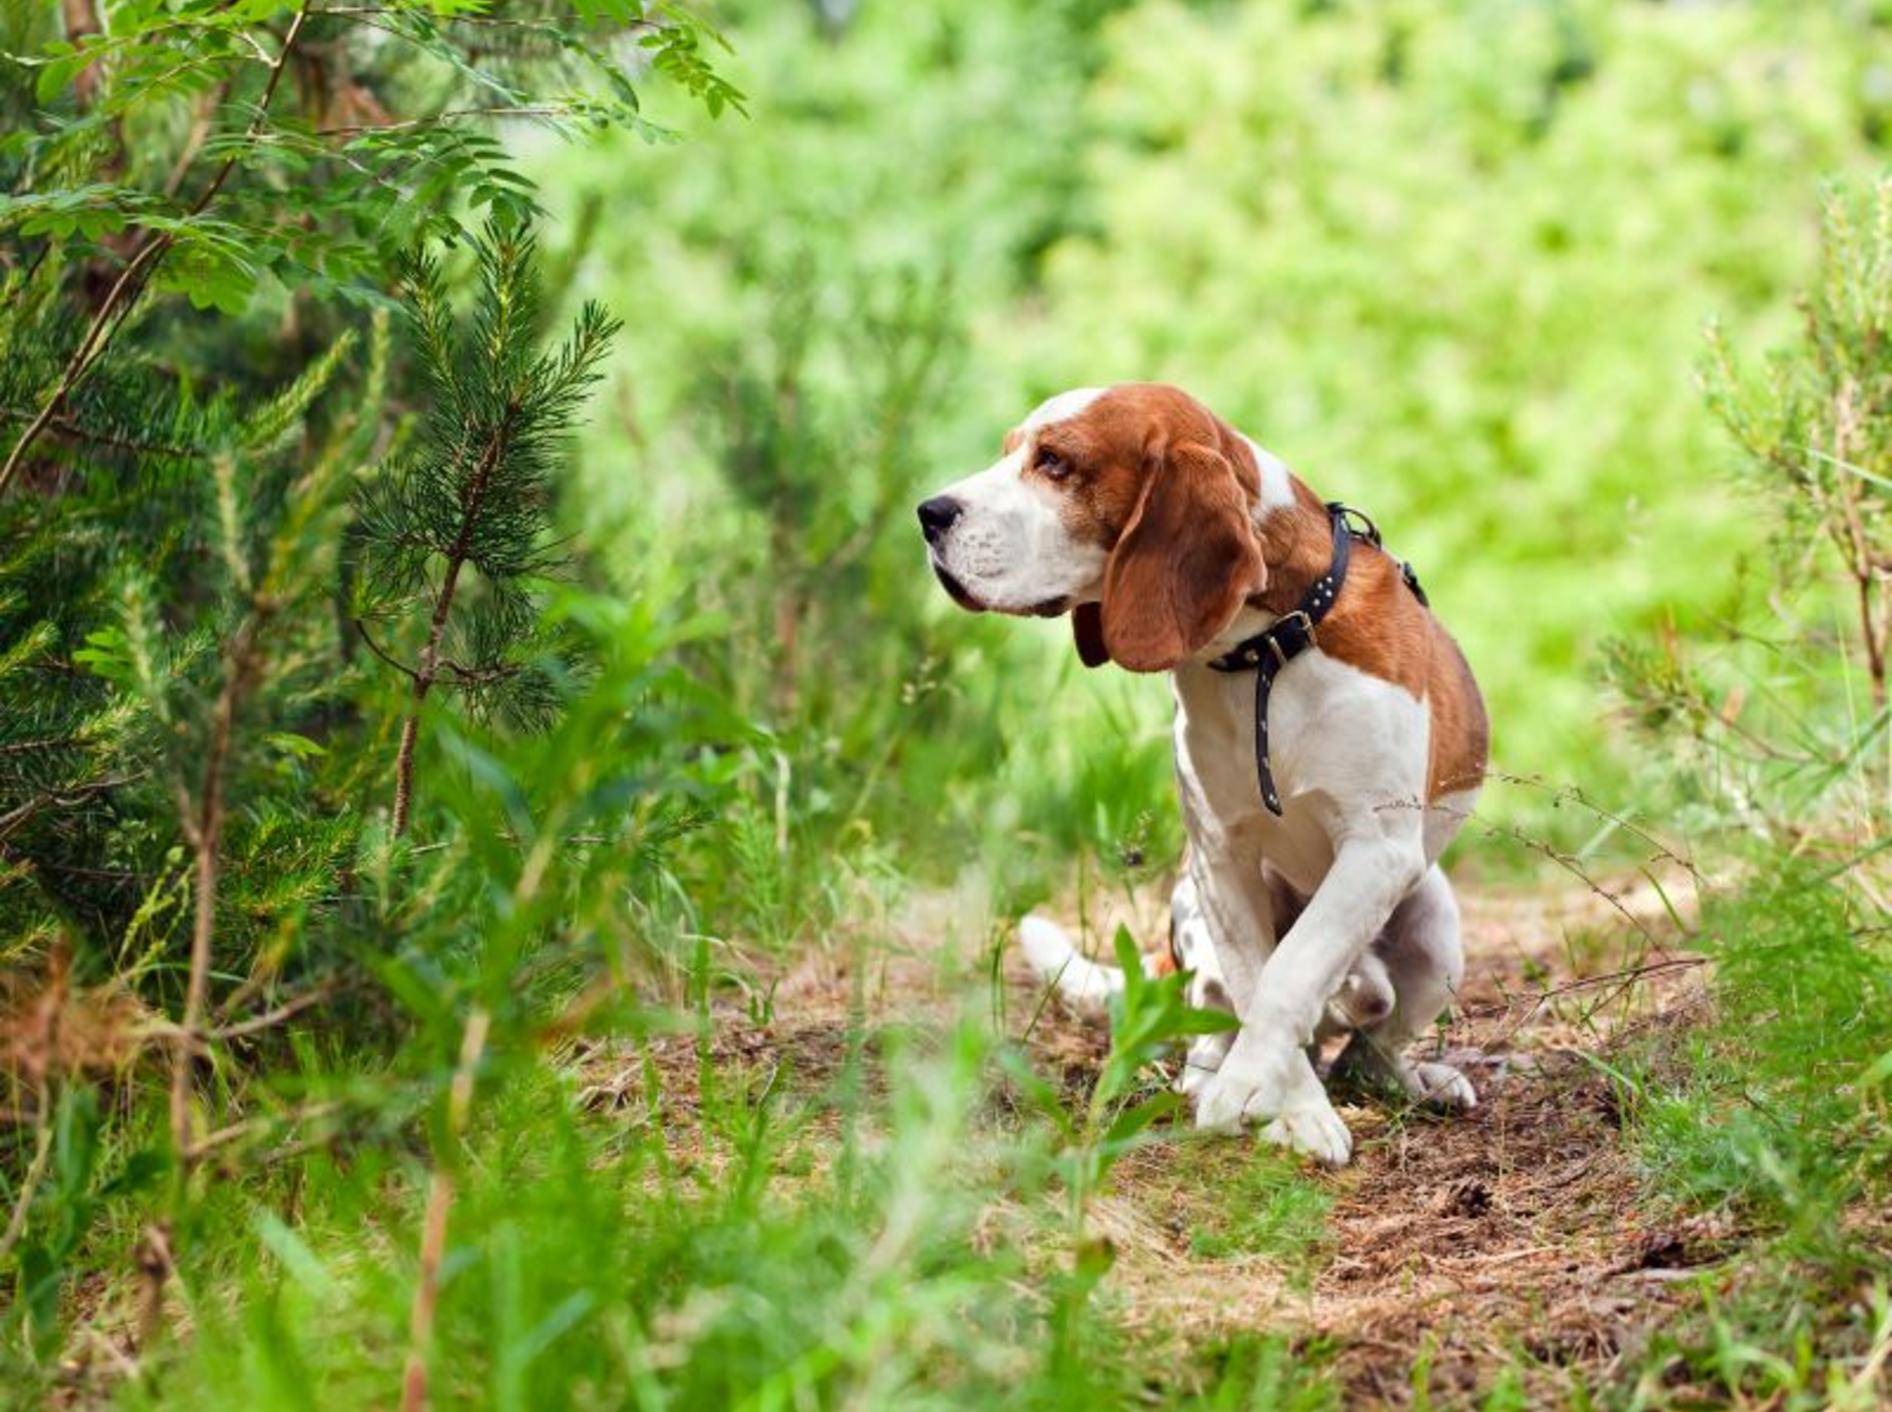 Suchspiele: Eine schöne Abwechslung beim Hundespaziergang – Bild: Shutterstock / Igor Normann